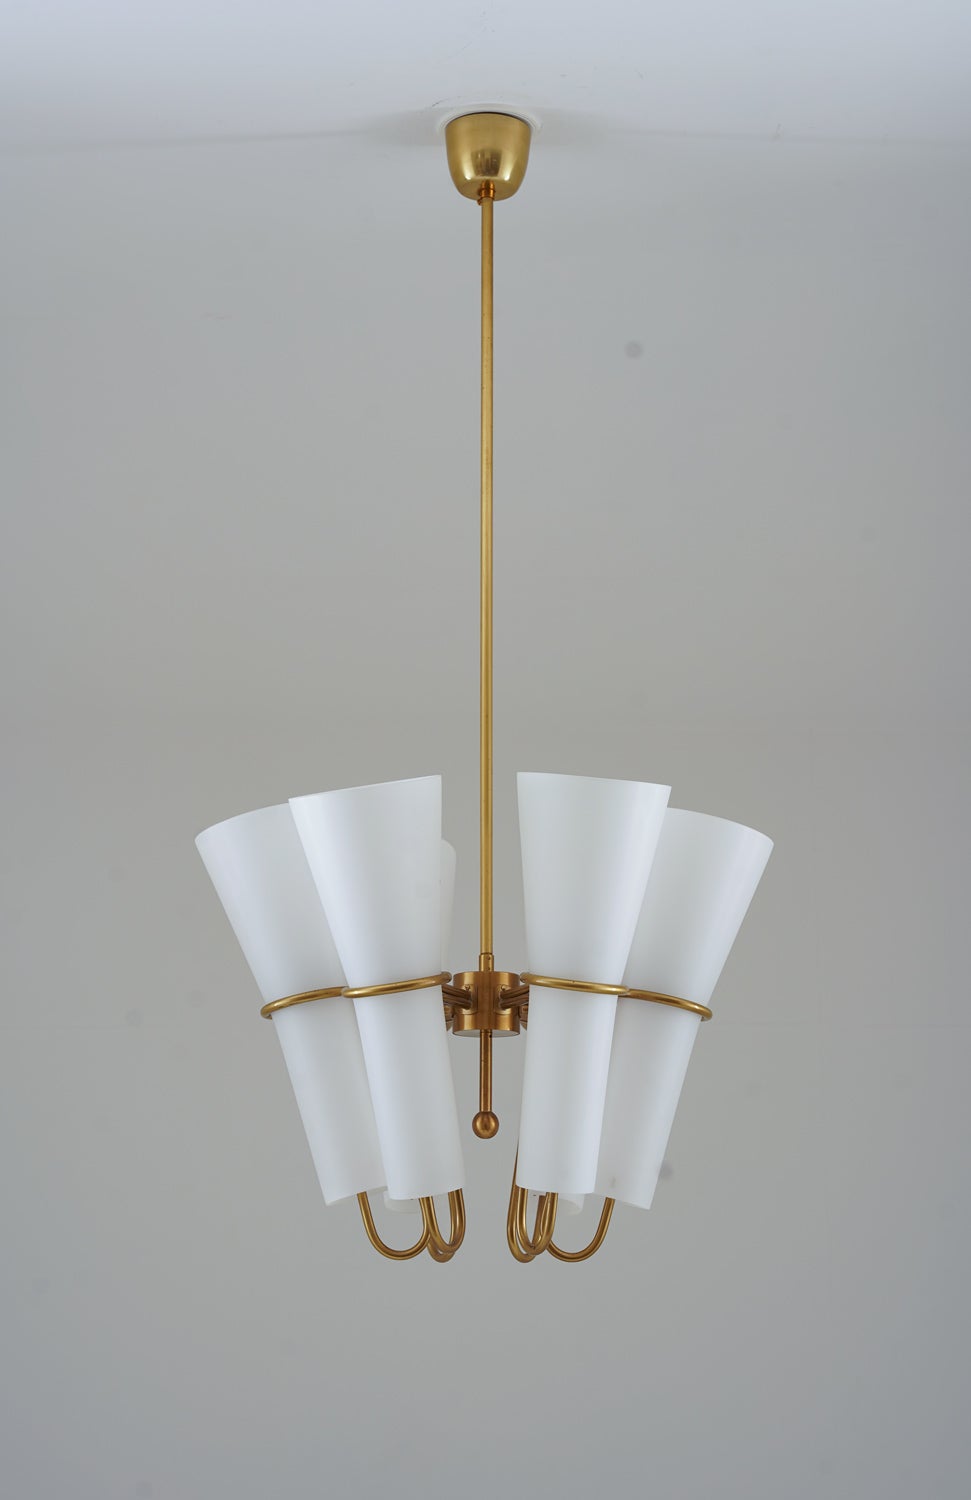 Sehr seltene Kronleuchter von Hans-Agne Jakobsson, hergestellt von Arnold Wiig Fabrikker, Norwegen.
Diese zauberhaften Lampen verfügen über sechs Lichtquellen, die von großen Opalglasschirmen verdeckt werden. Die Schirme werden von einem